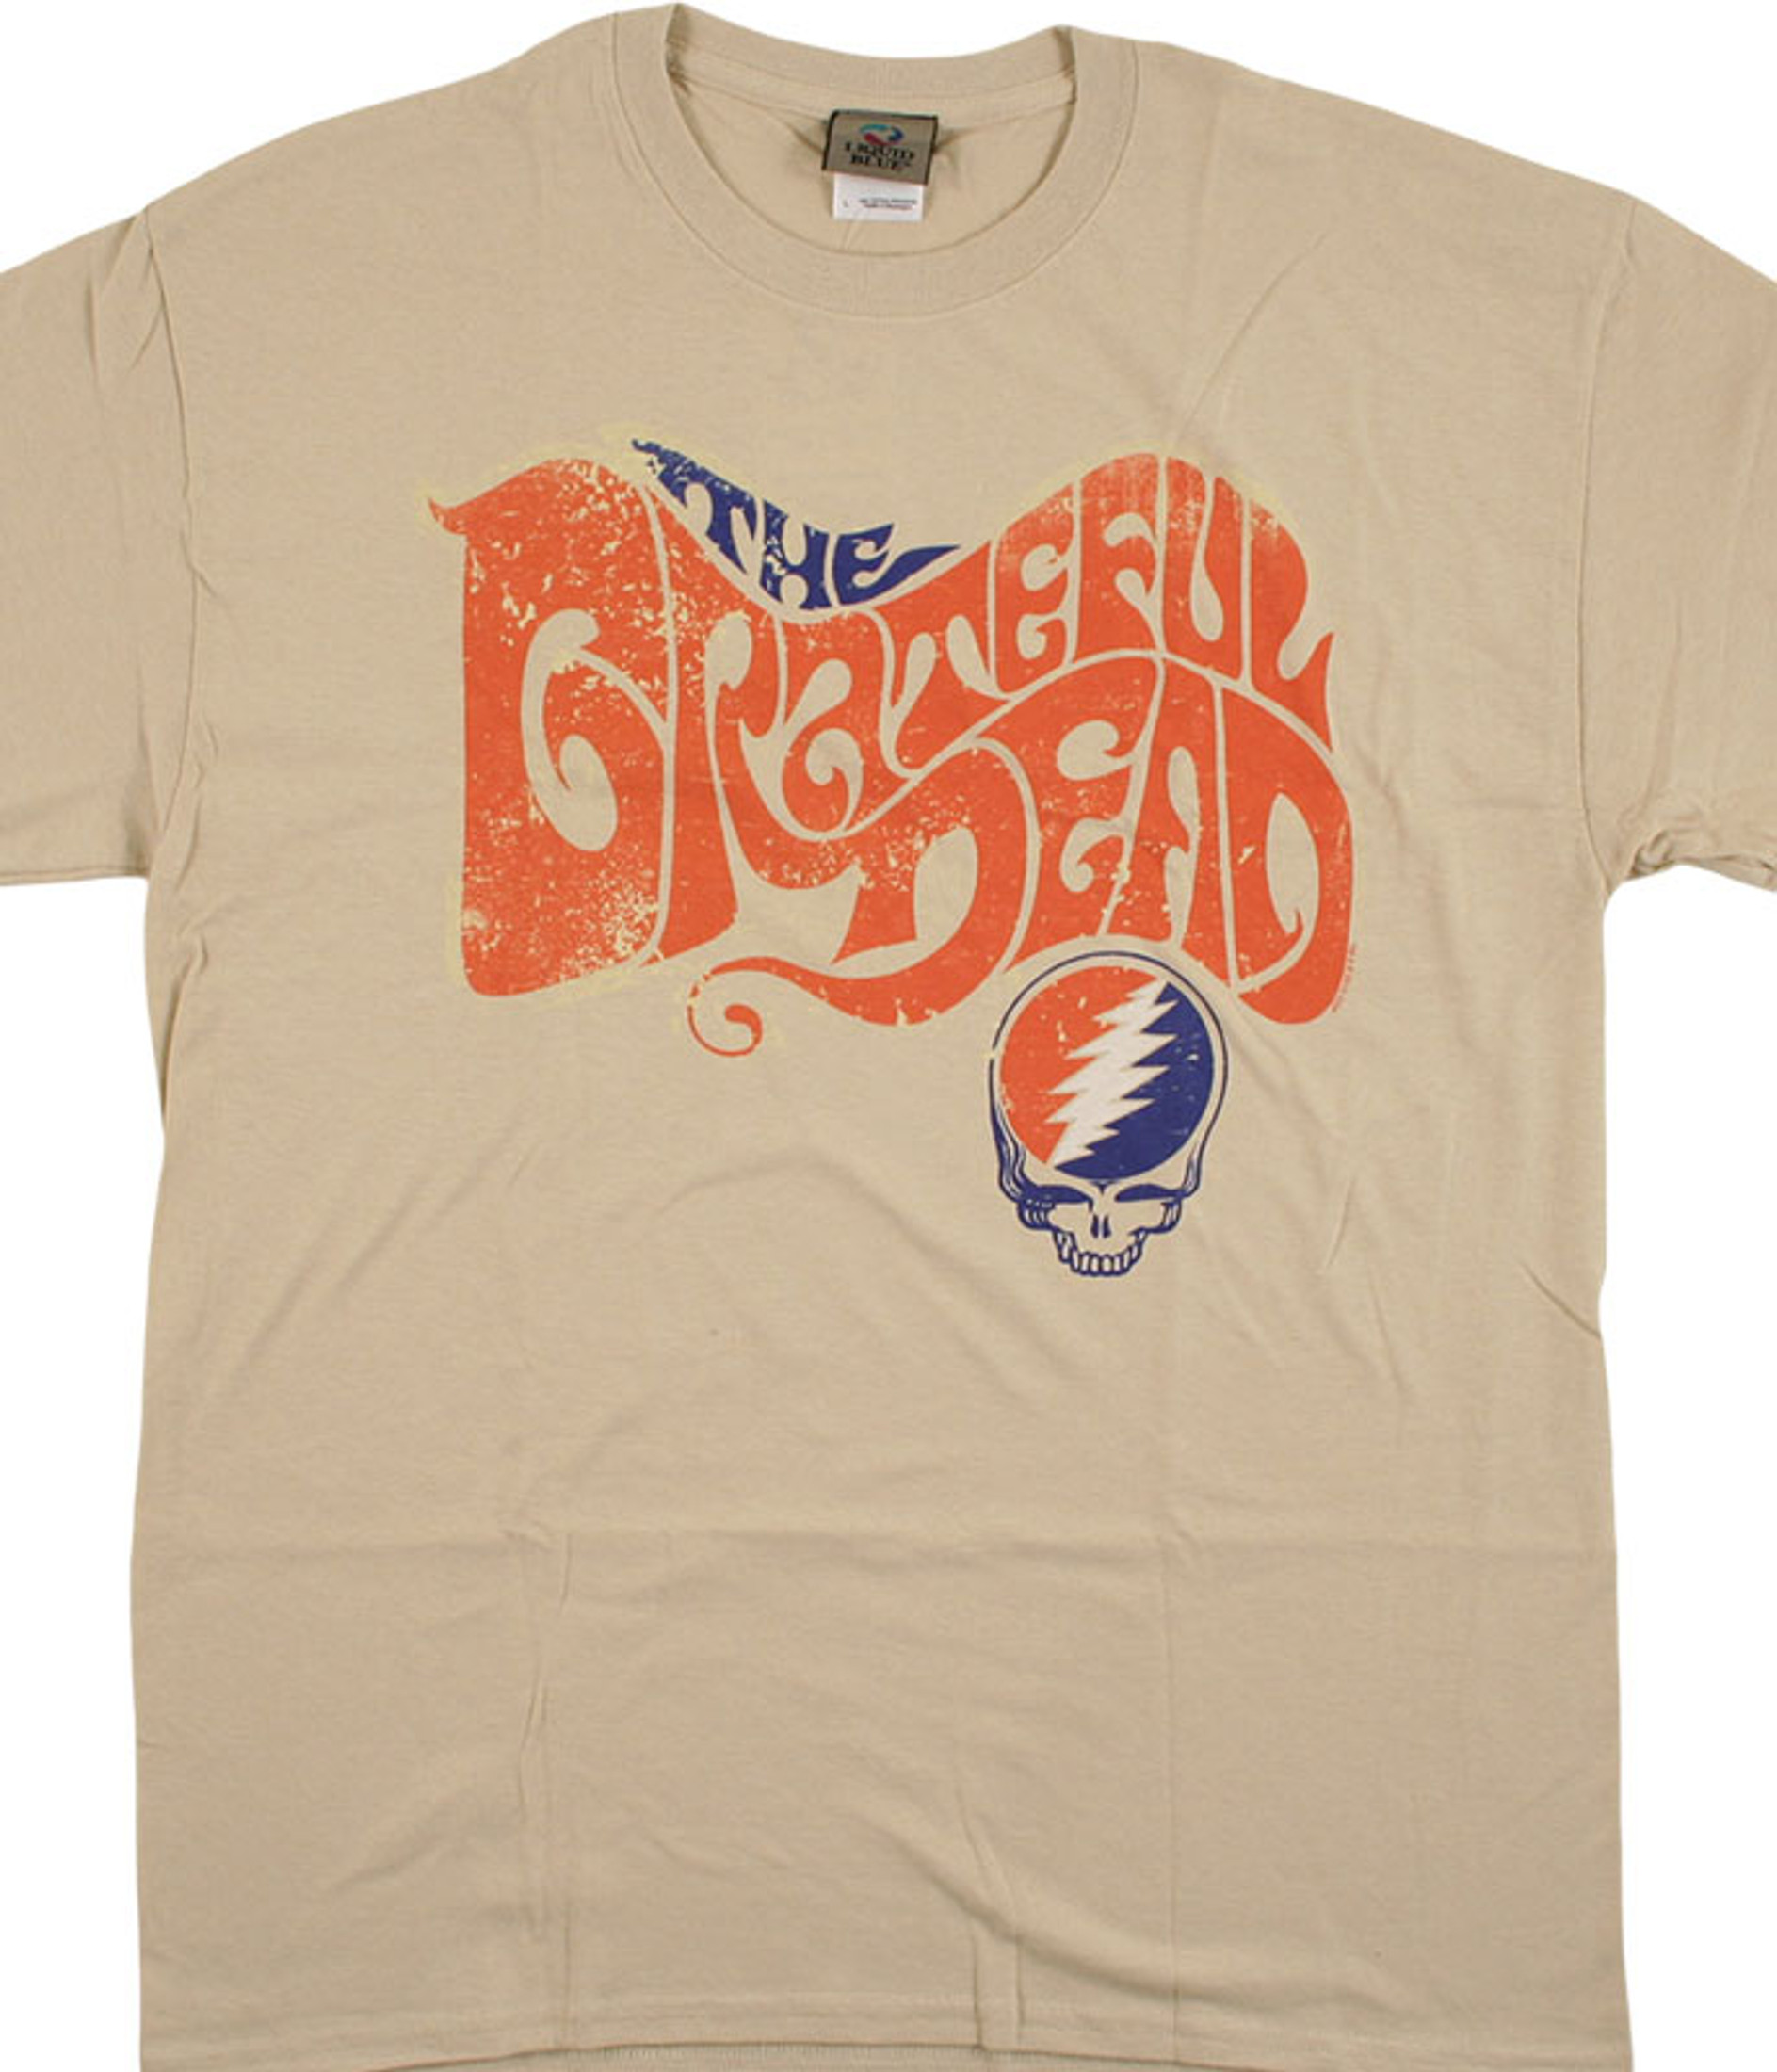 The Walking Dead Farewell Tour Band Unisex Tri-Blend T-Shirt